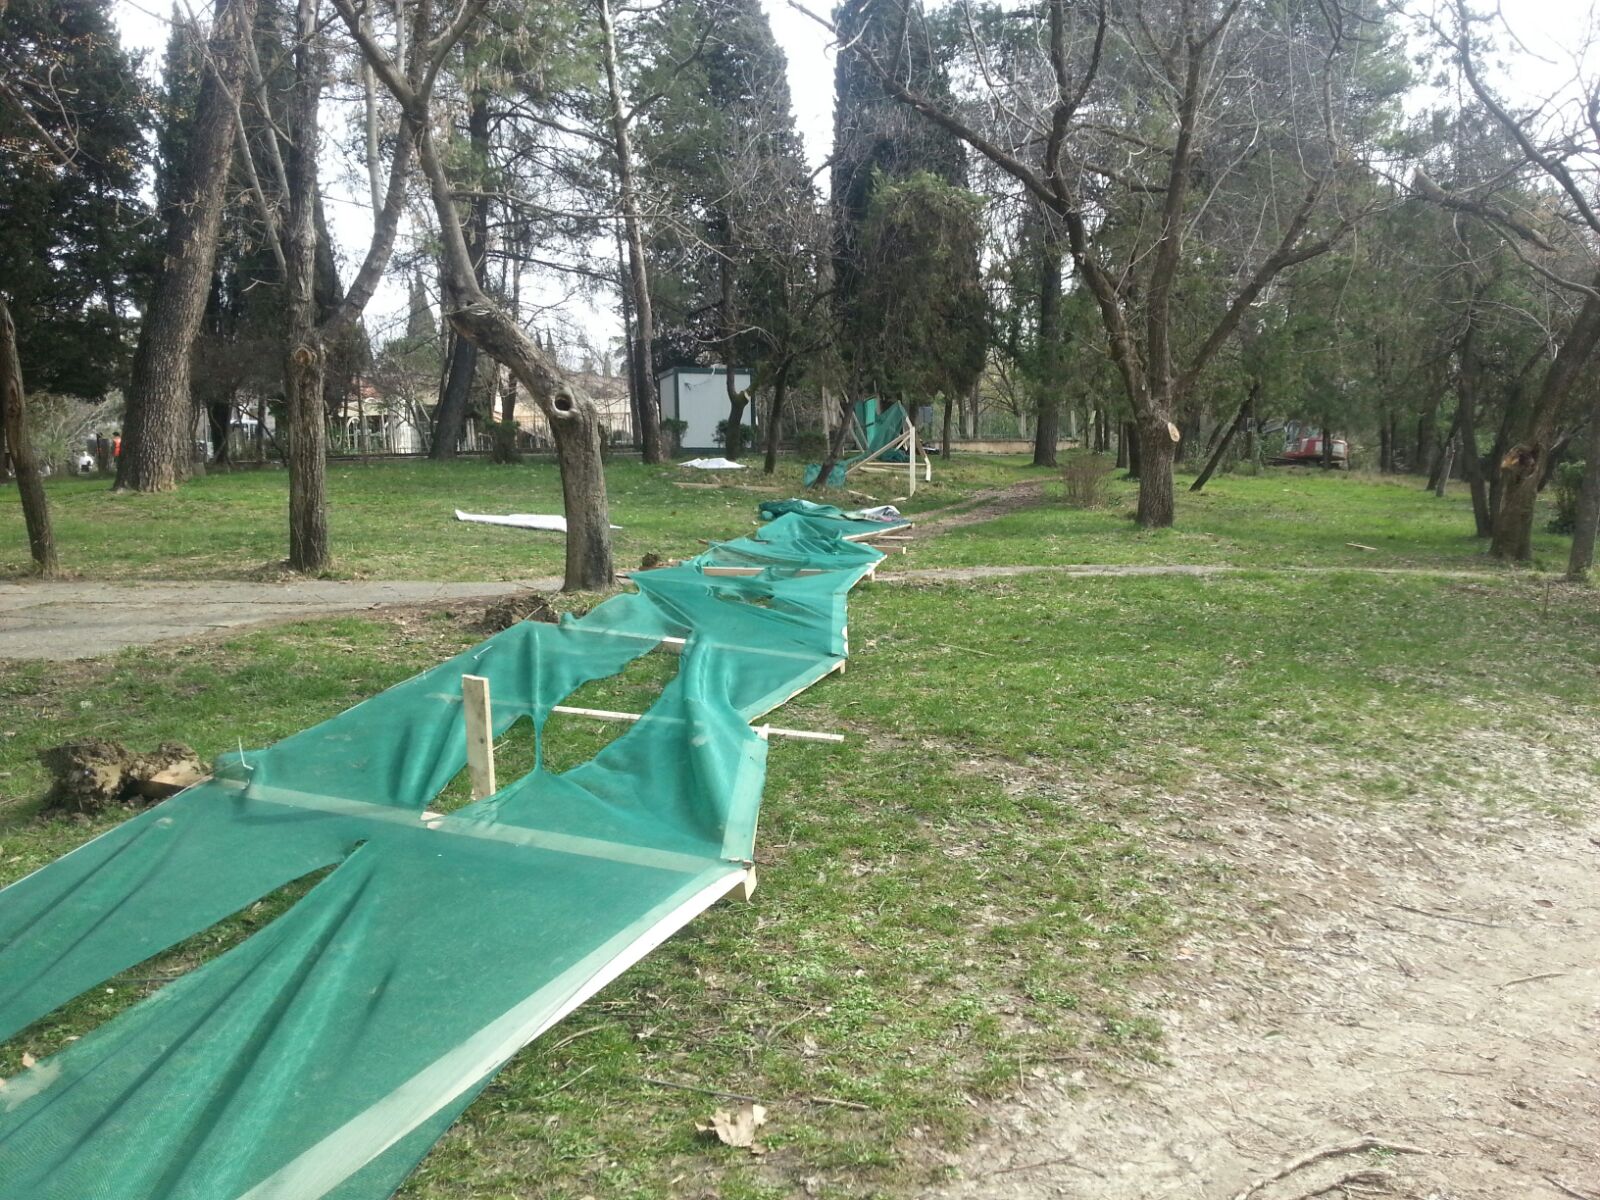 Qytetarët "pushtojnë" parkun e liqenit, denoncojnë në prokurori Kryebashkiakun Veliaj